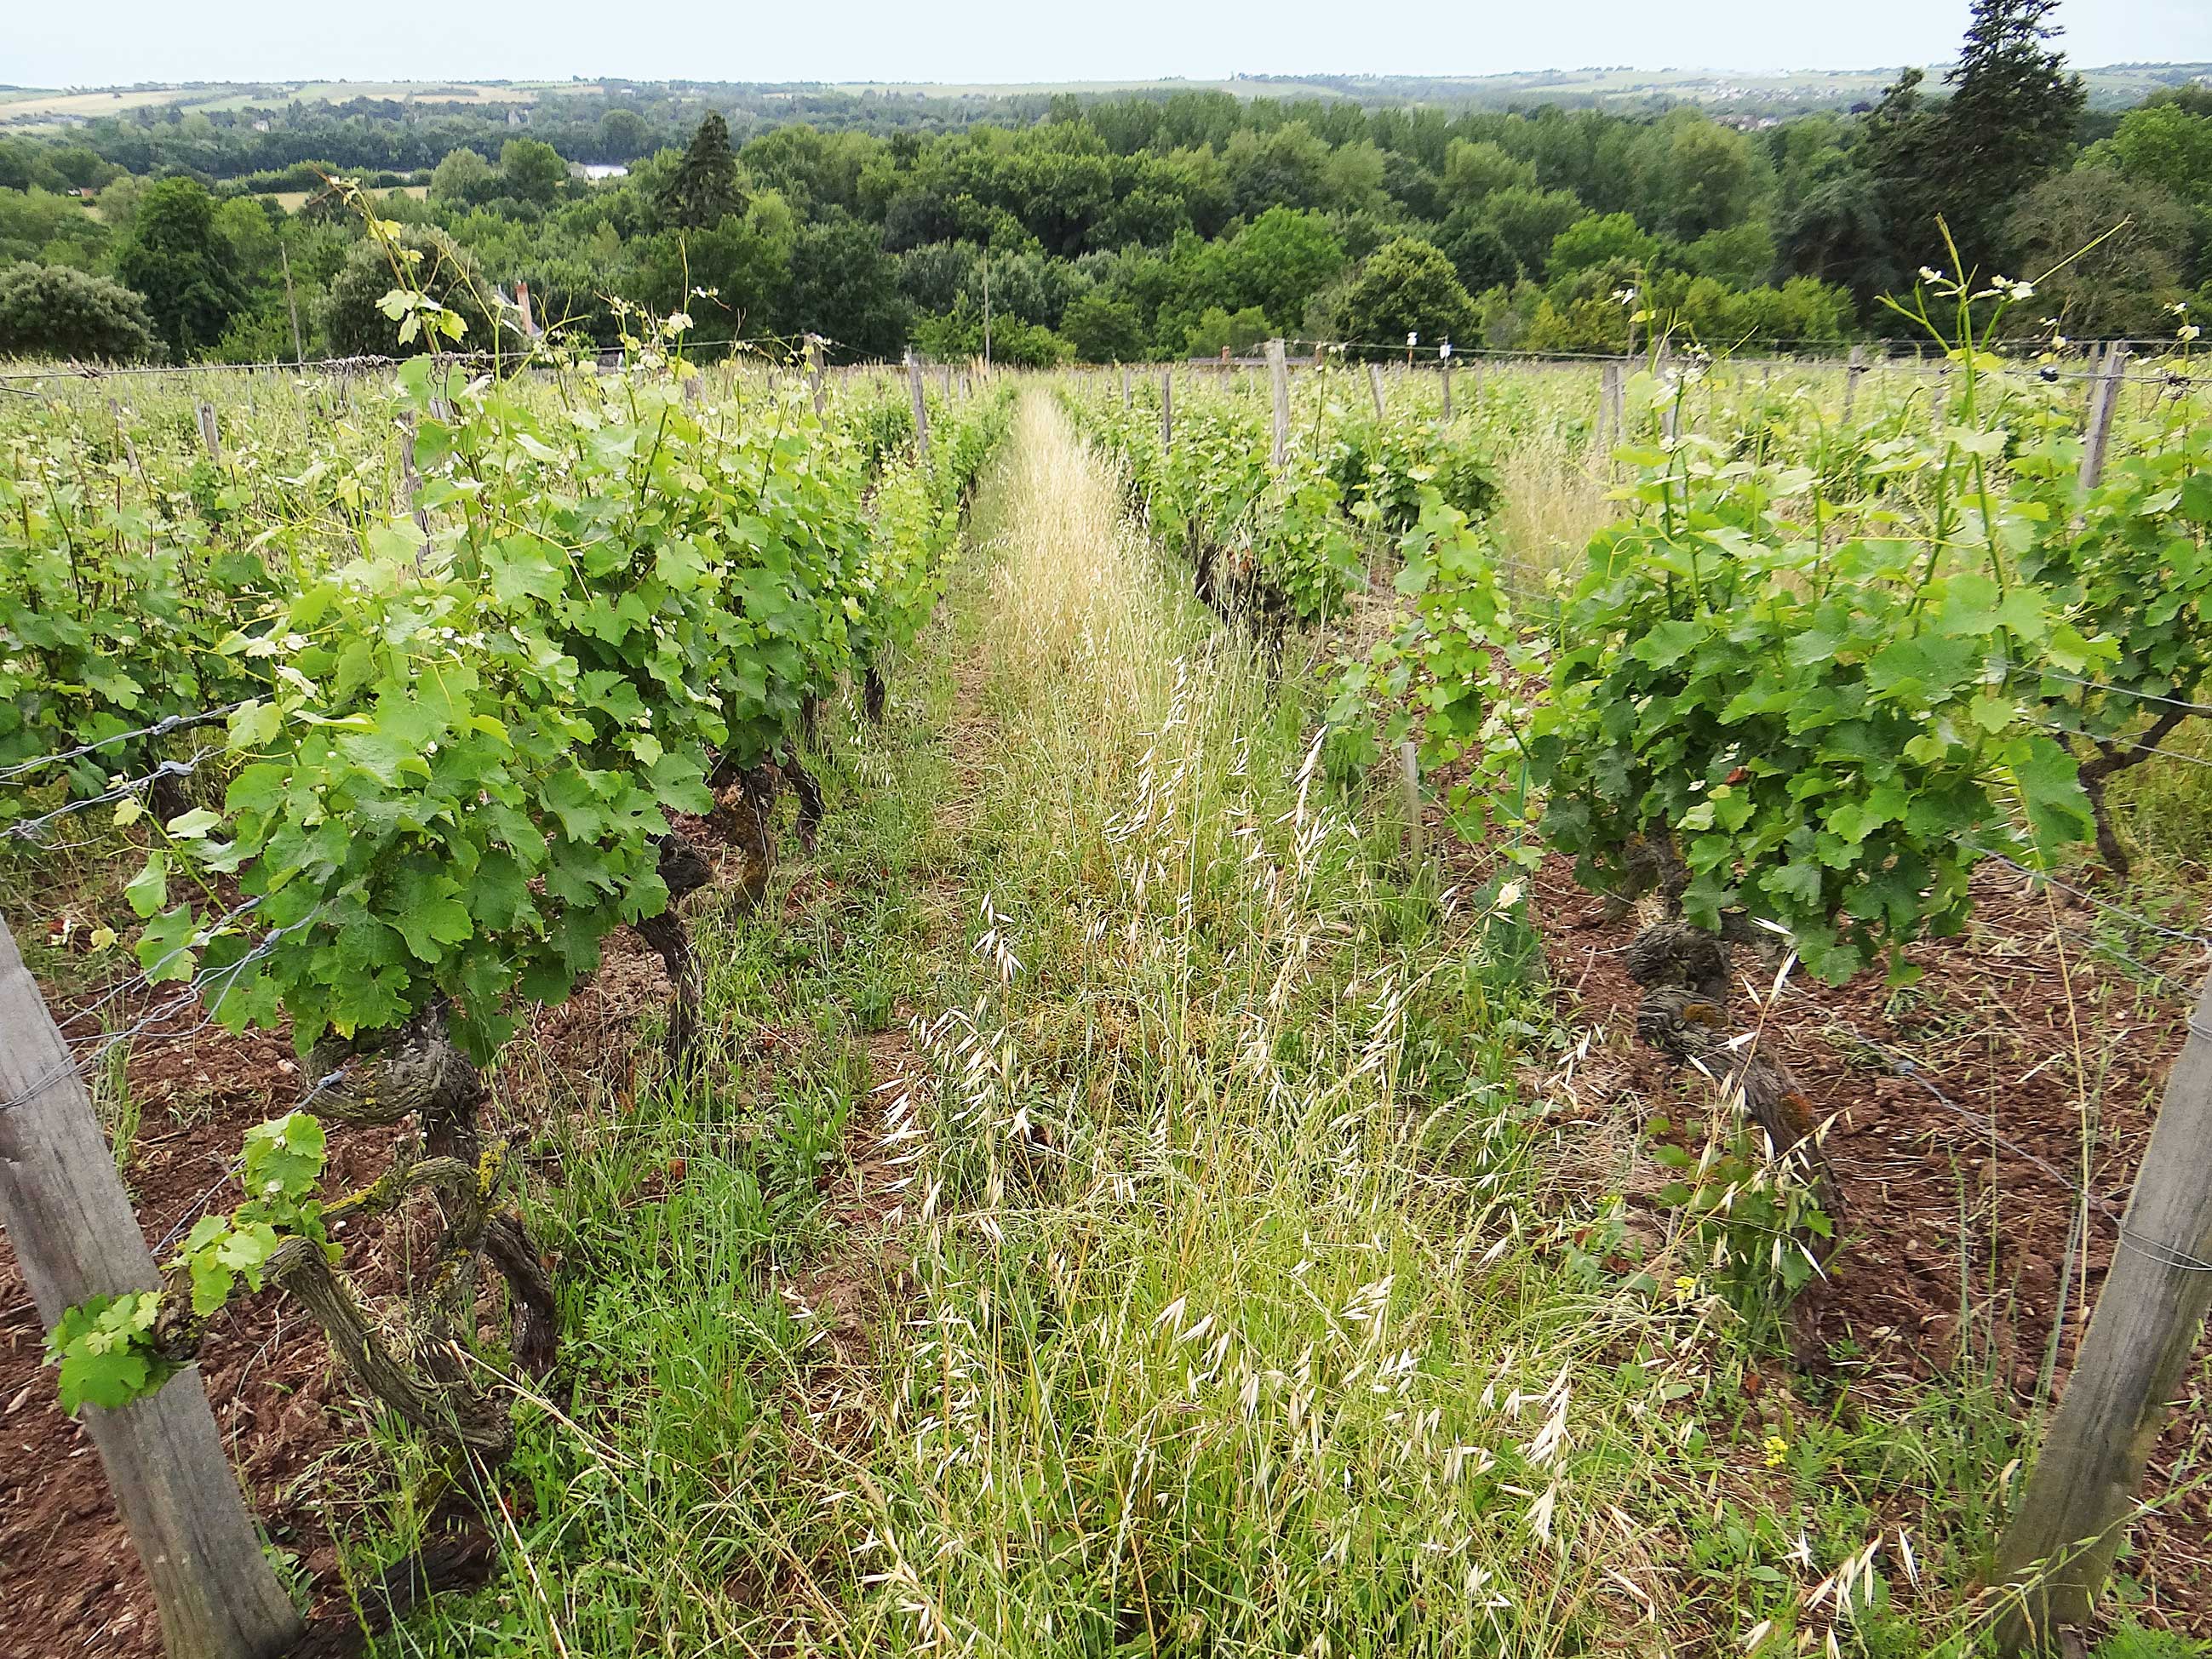 Auswirkung des Jahrgangs auf die umweltorientierten Leistungen einer technischen Weinbaustrecke, die durch Analyse des Lebenszyklus abgeschätzt wurden